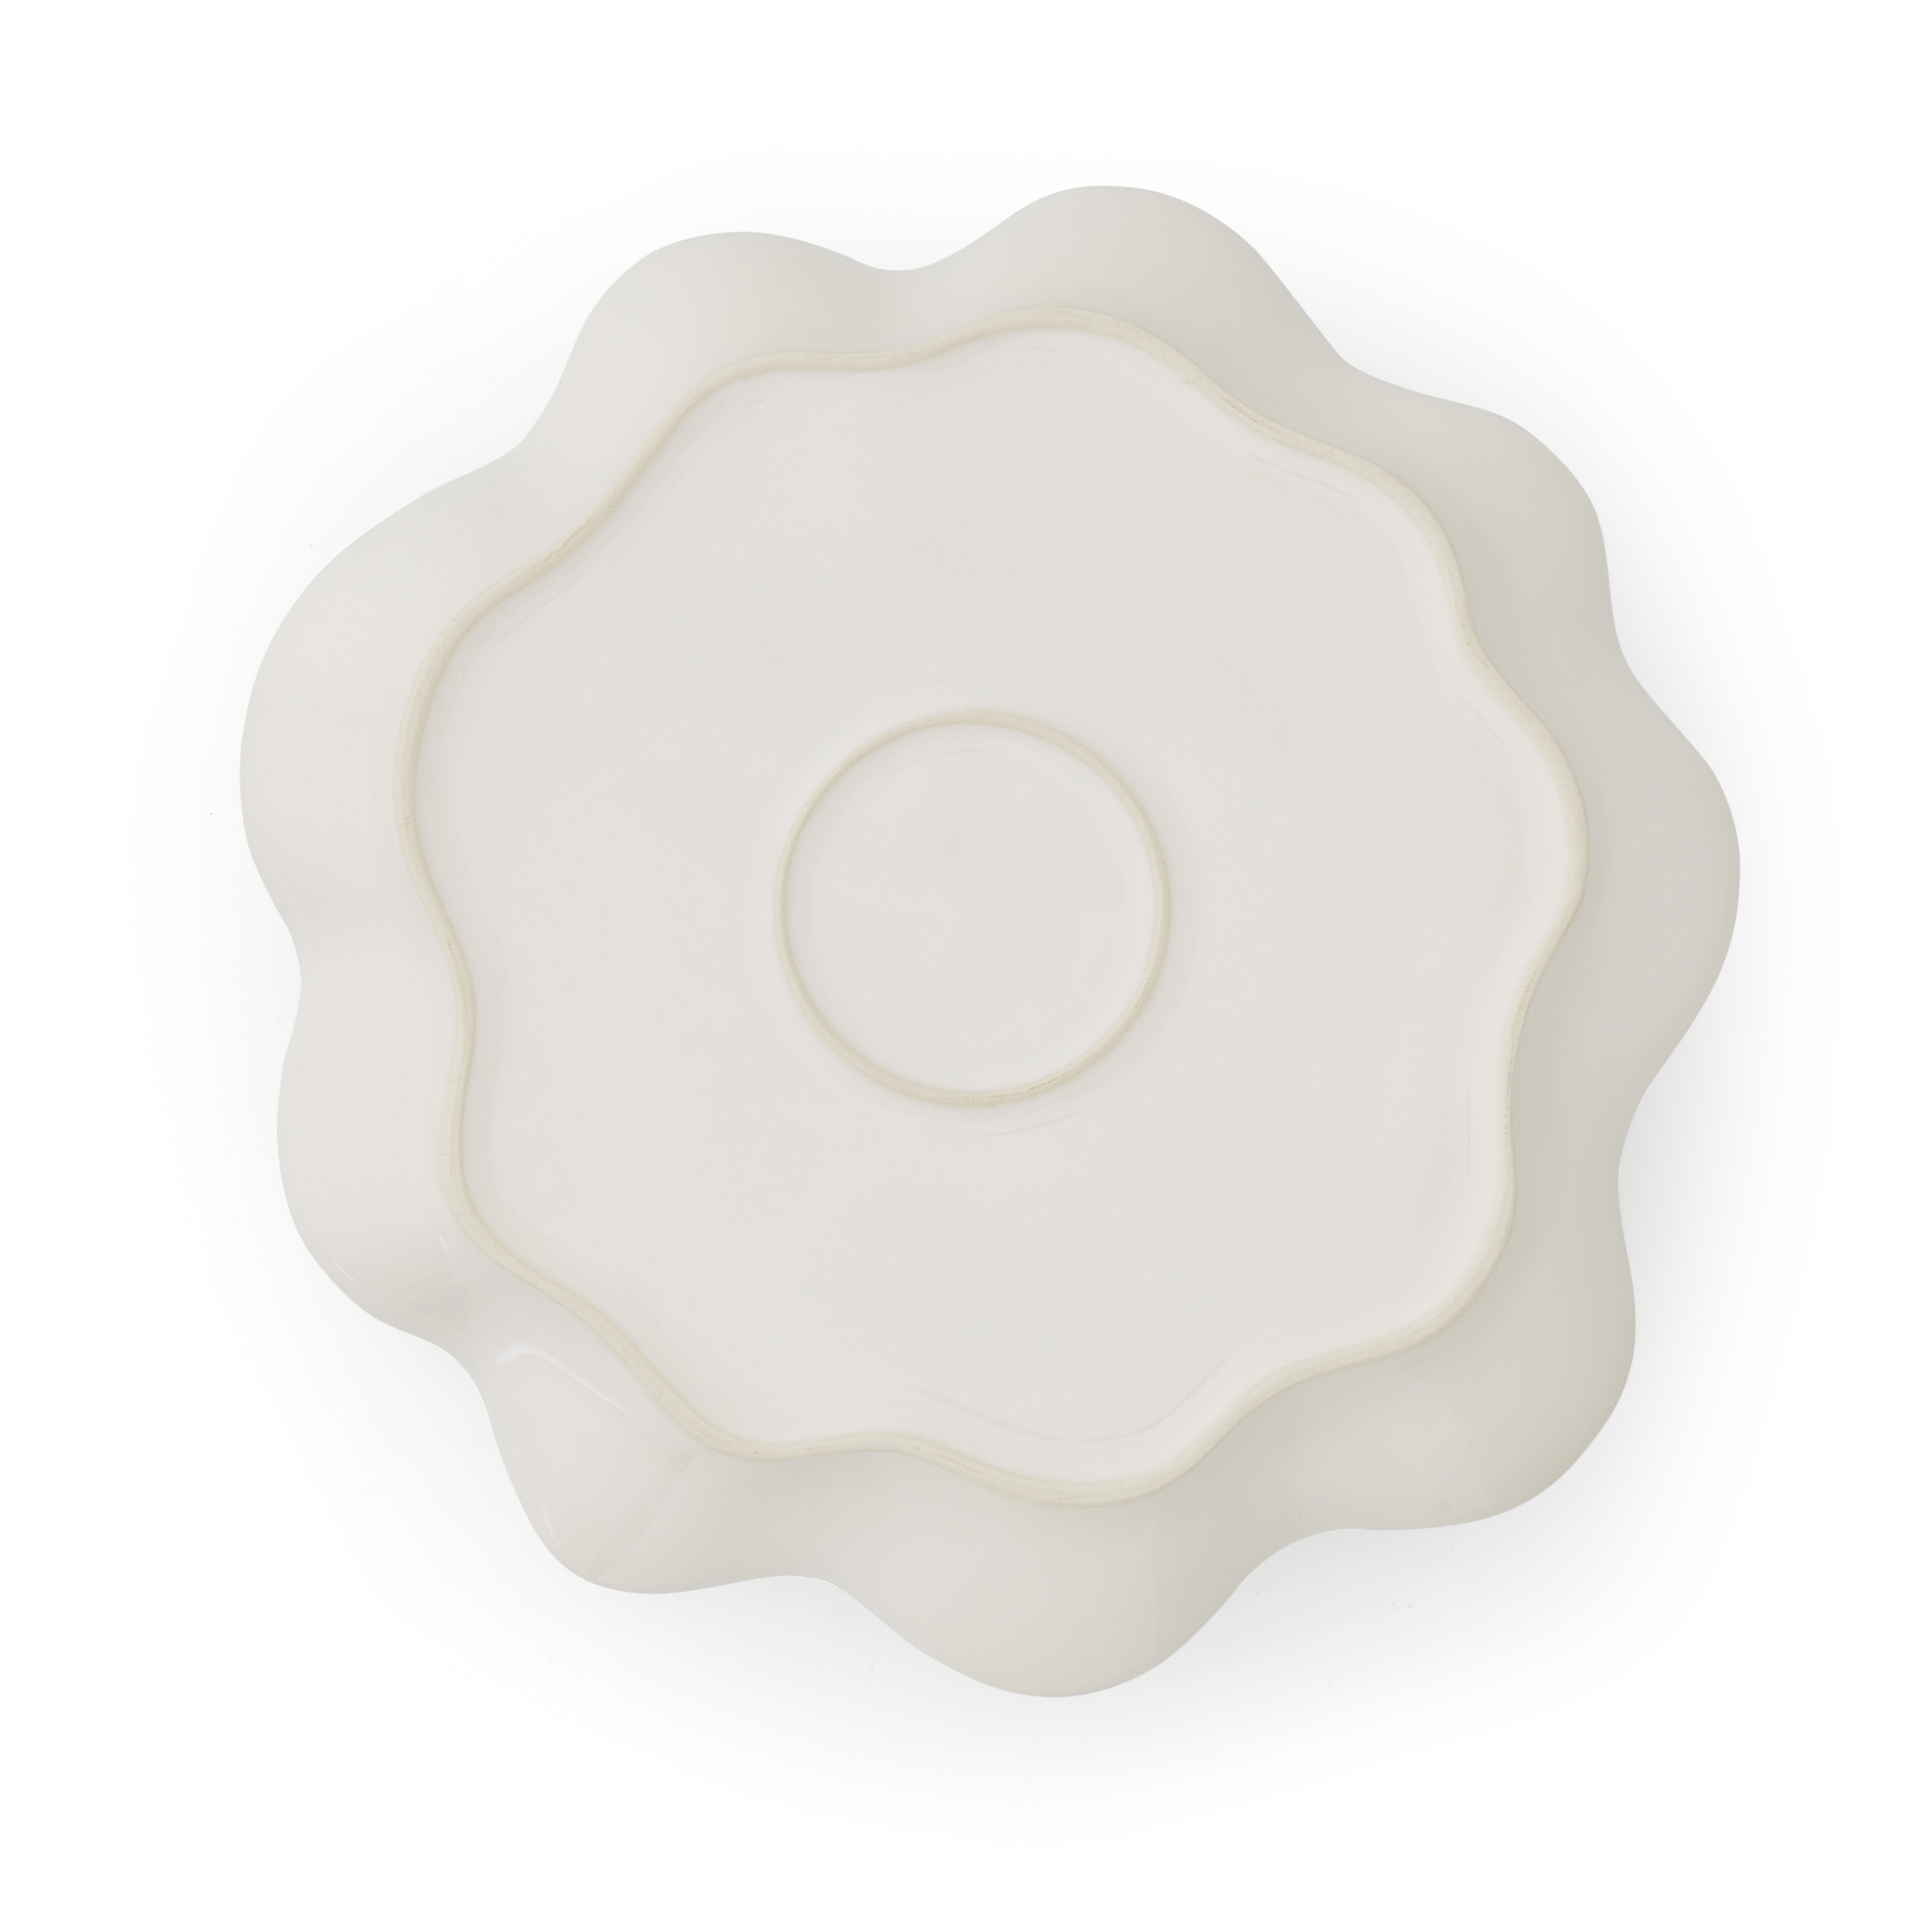 Sophie Conran Floret Large Serving Platter, Cream image number null